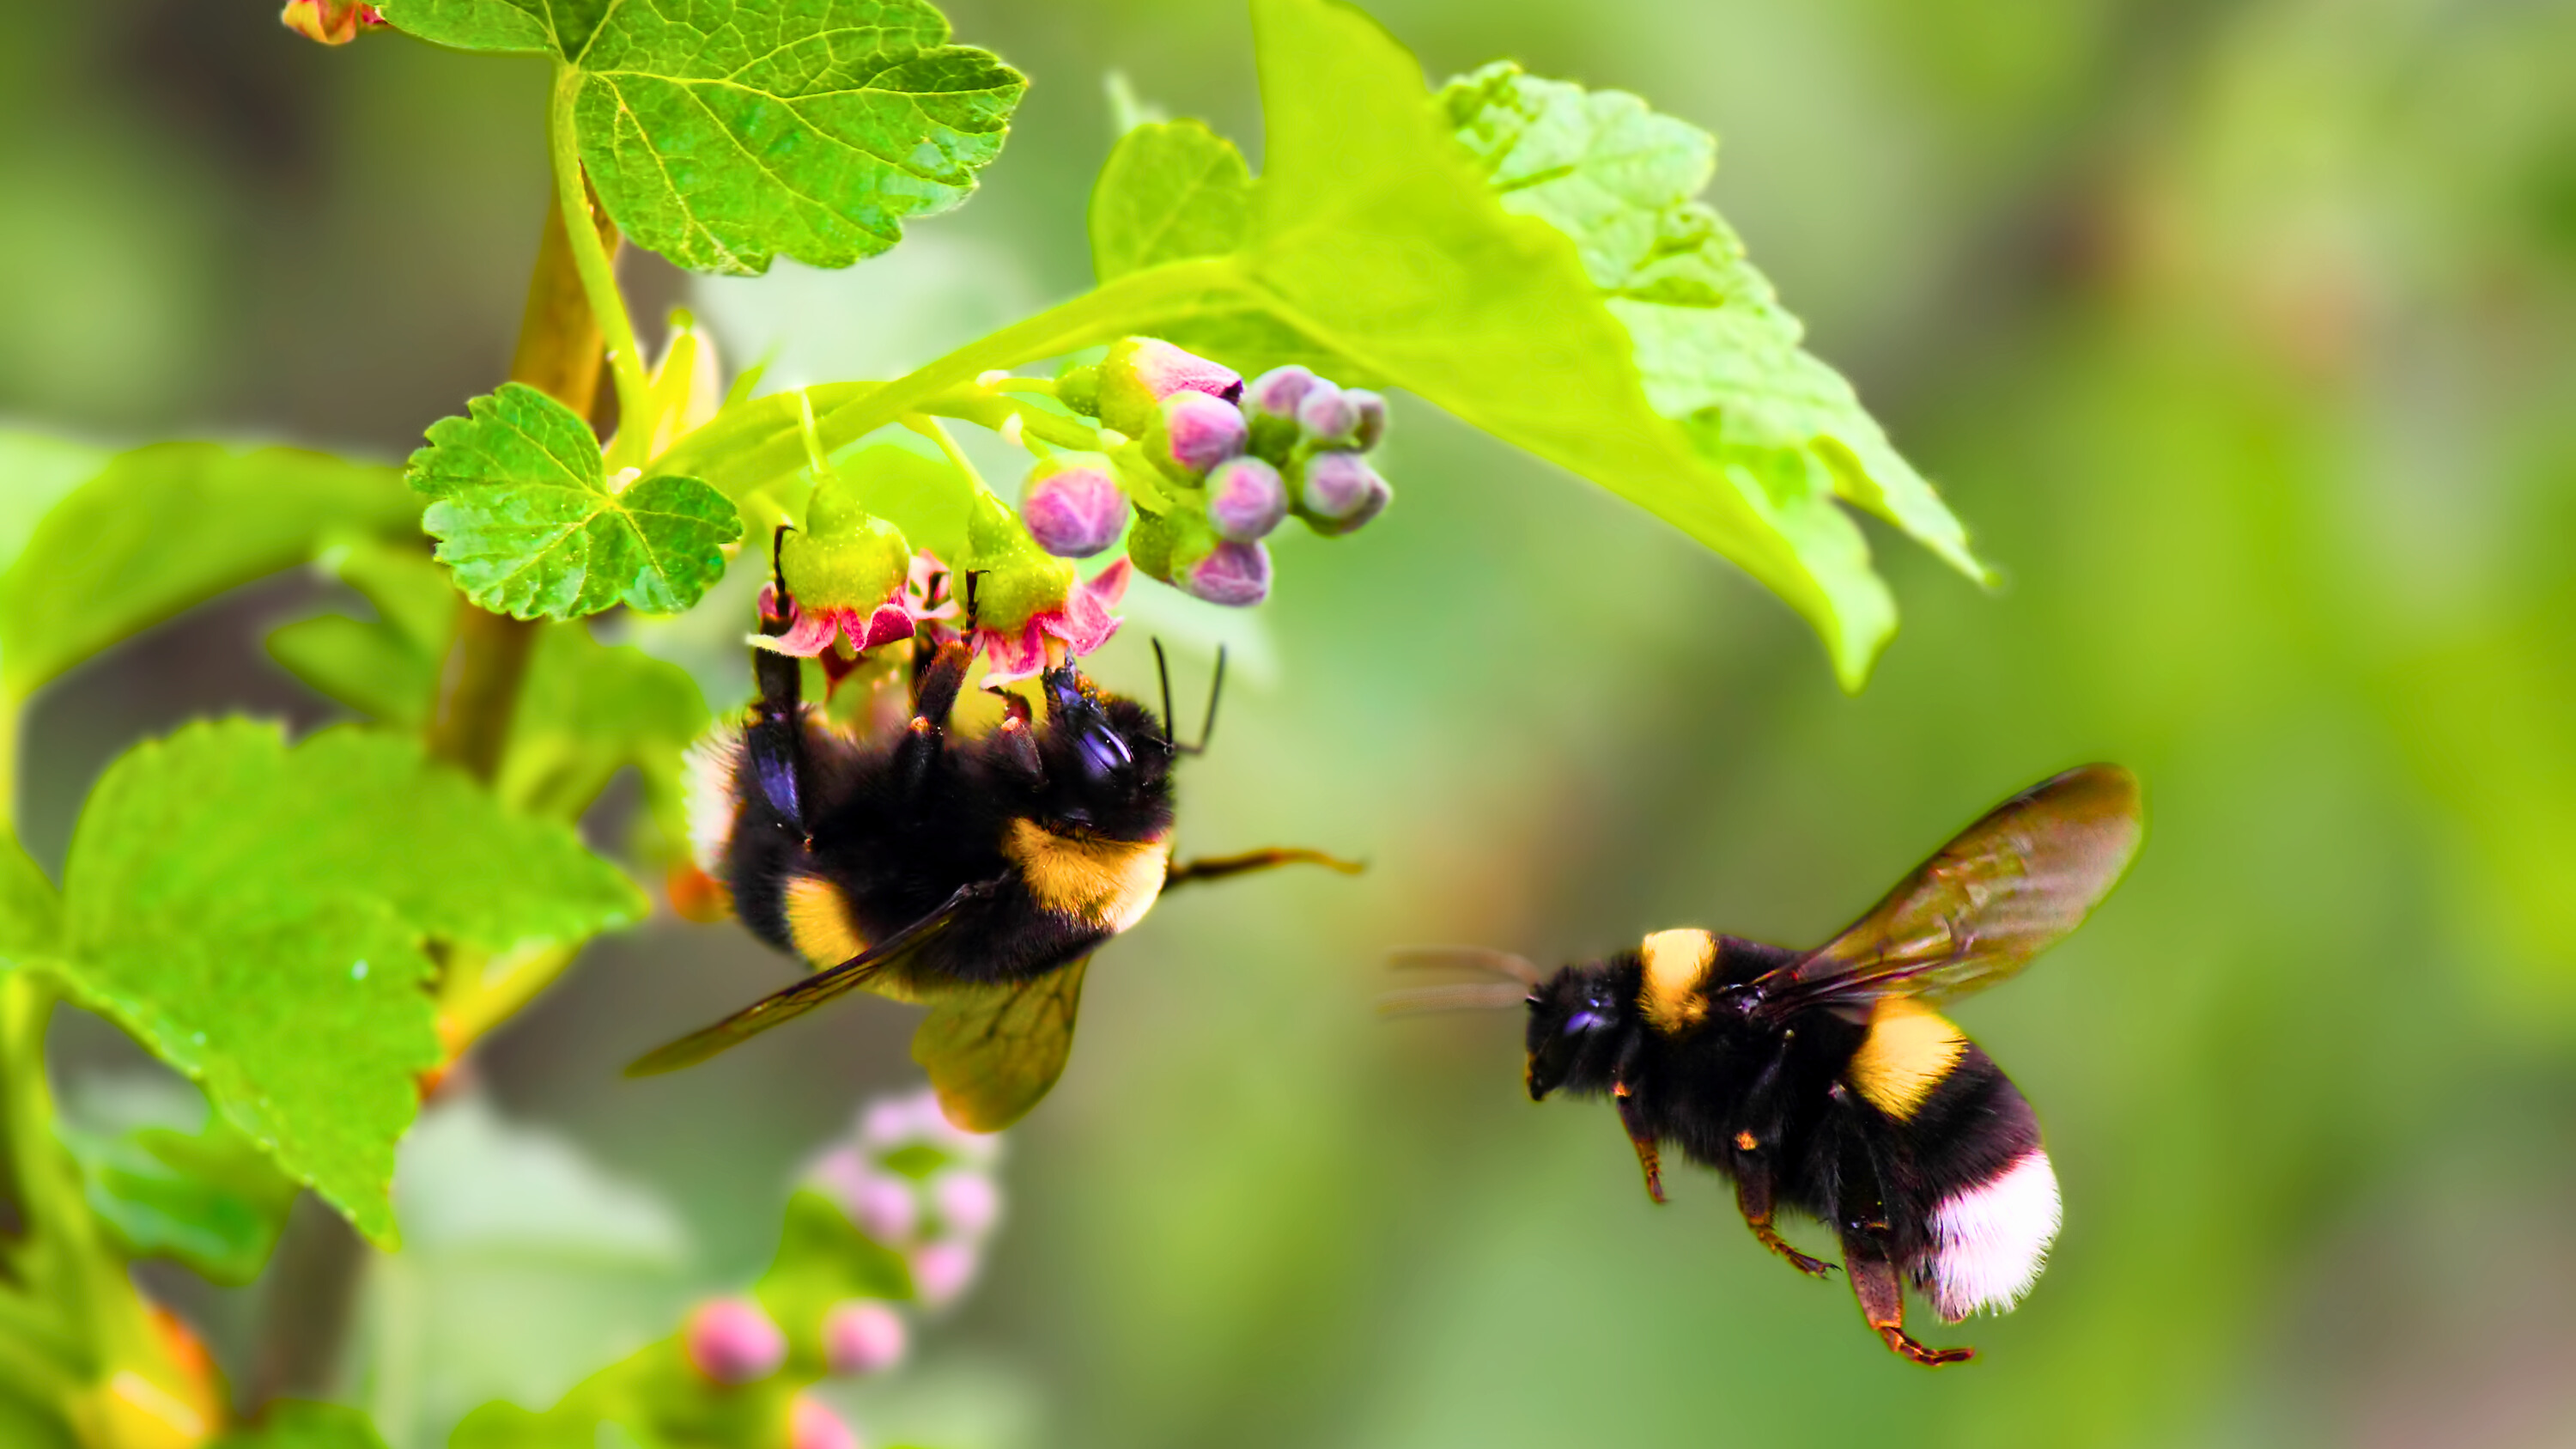 Les bourdons sont des insectes sociaux, qui sont d'excellents pollinisateurs grâce à leur résistance aux basses températures. © Den, Adobe Stock